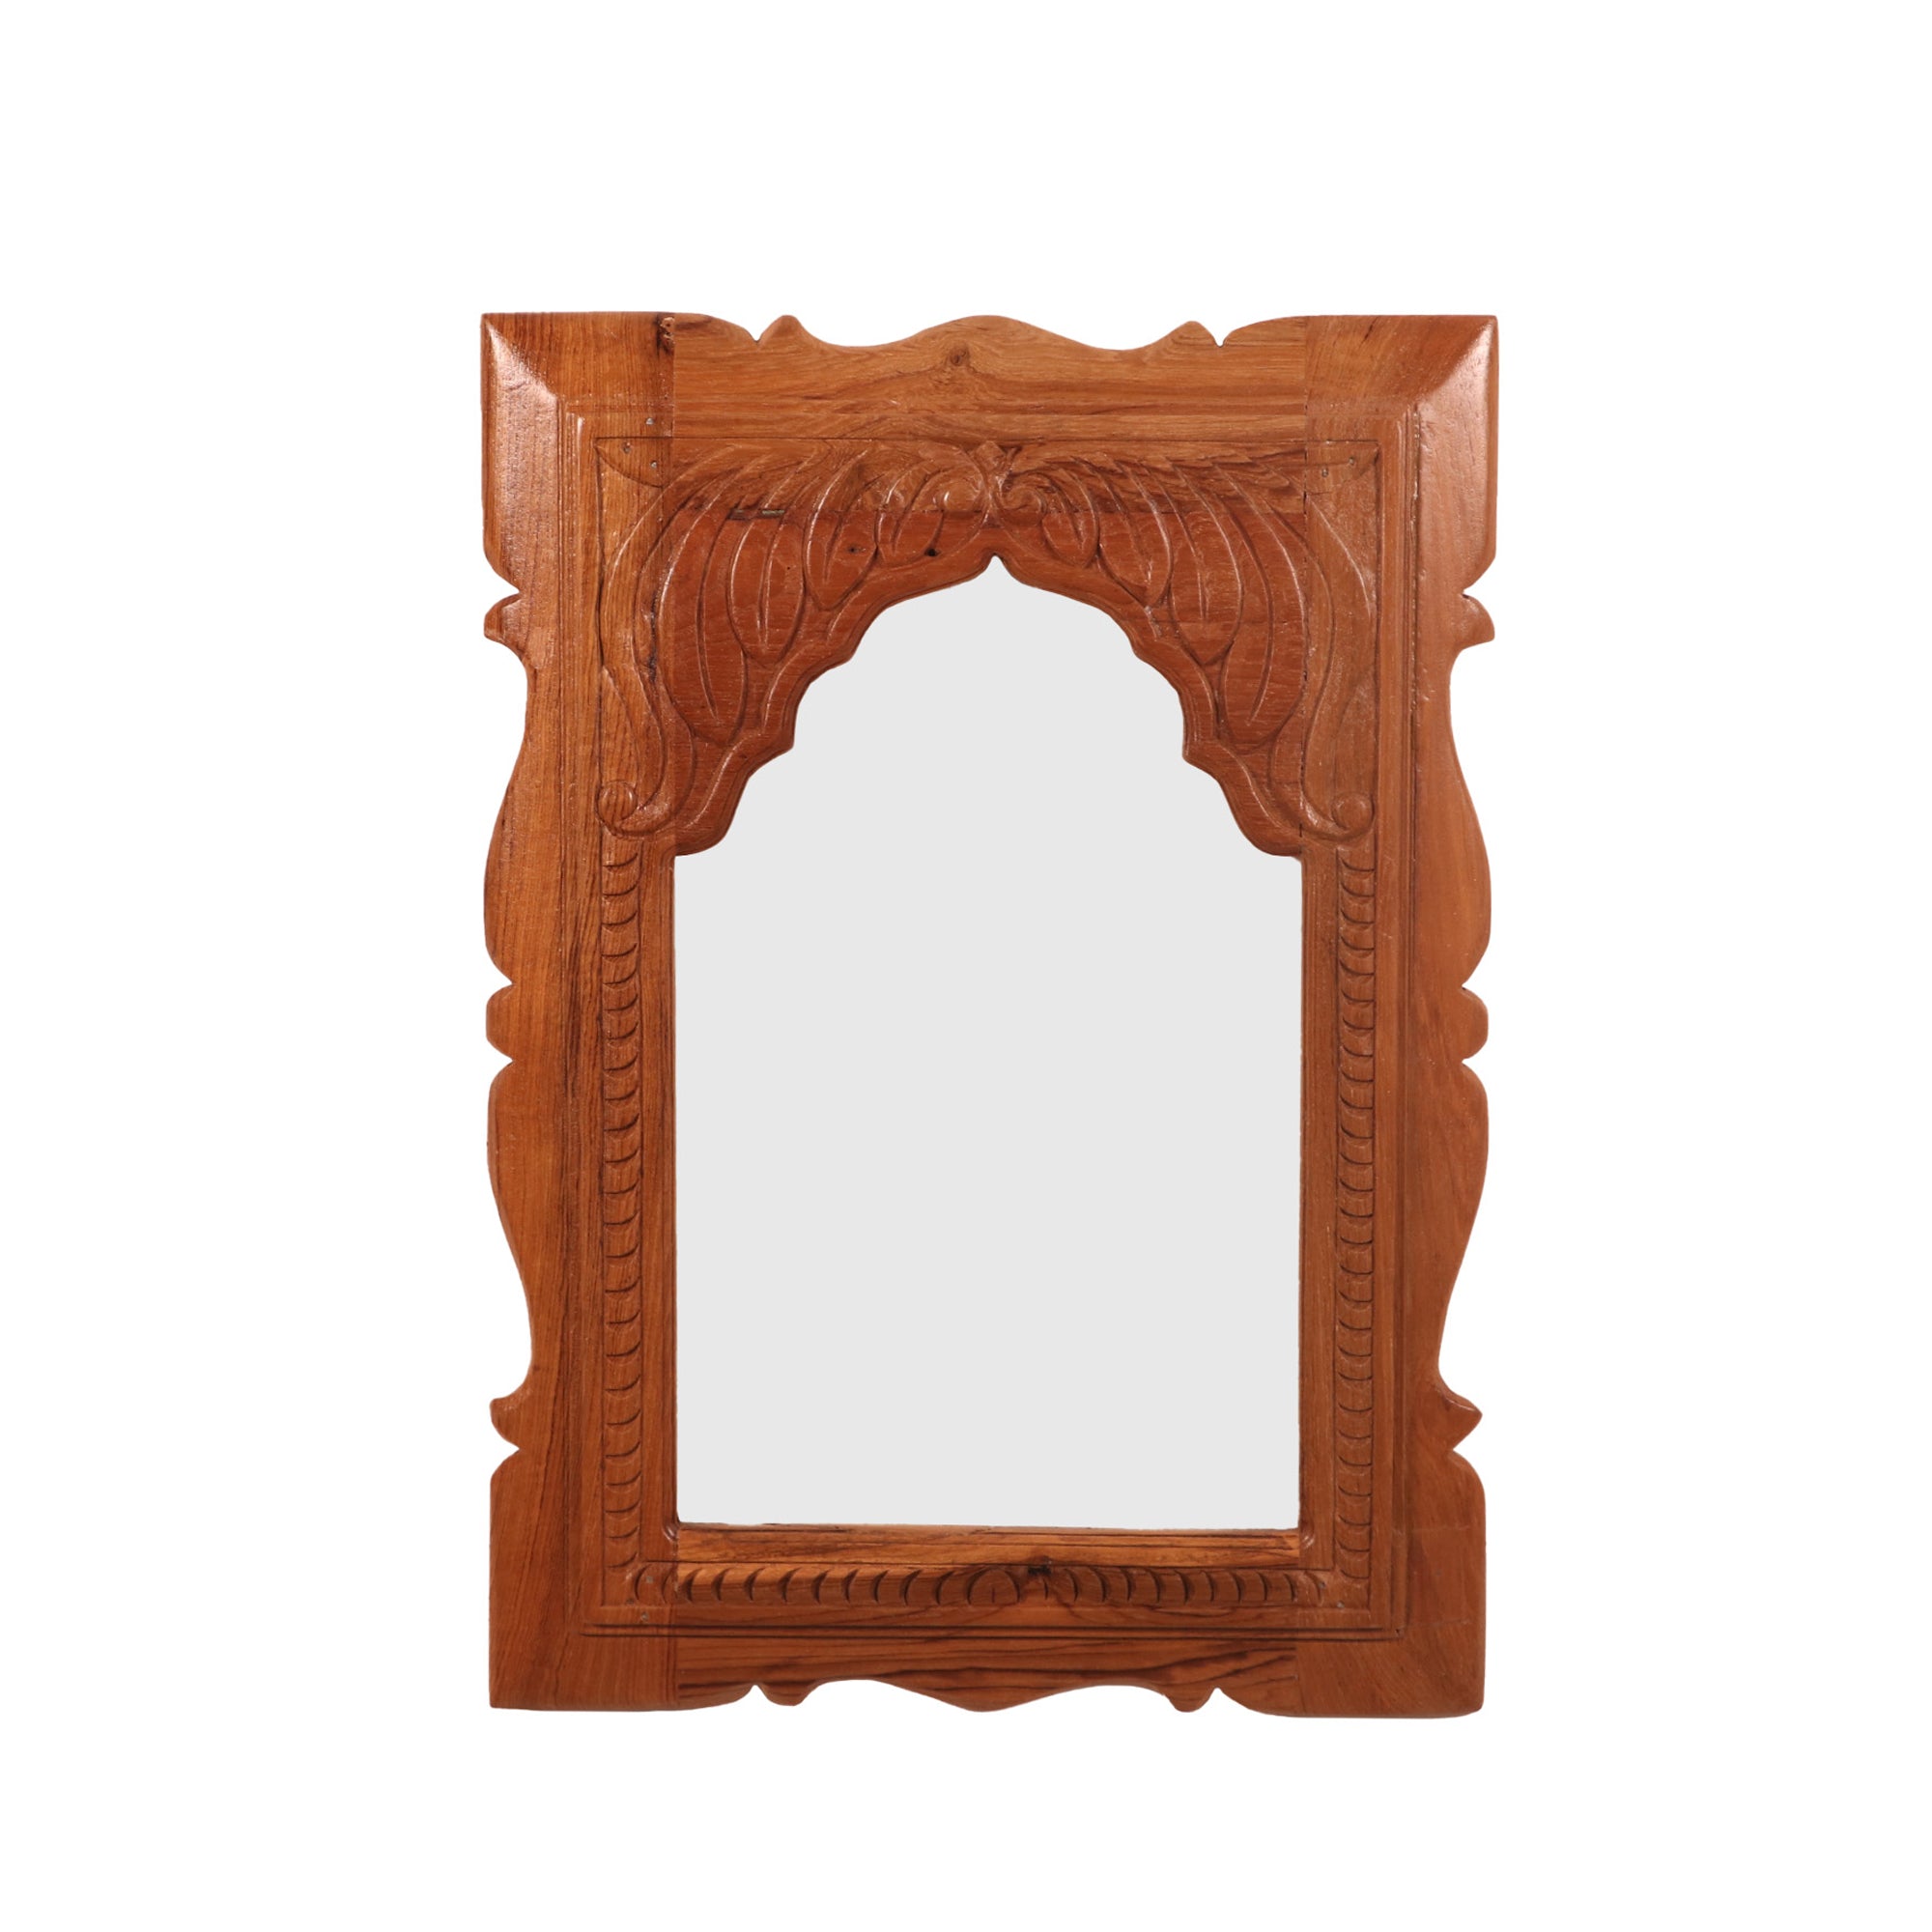 Carved flower pattern Teak Mirror Frame Mirror